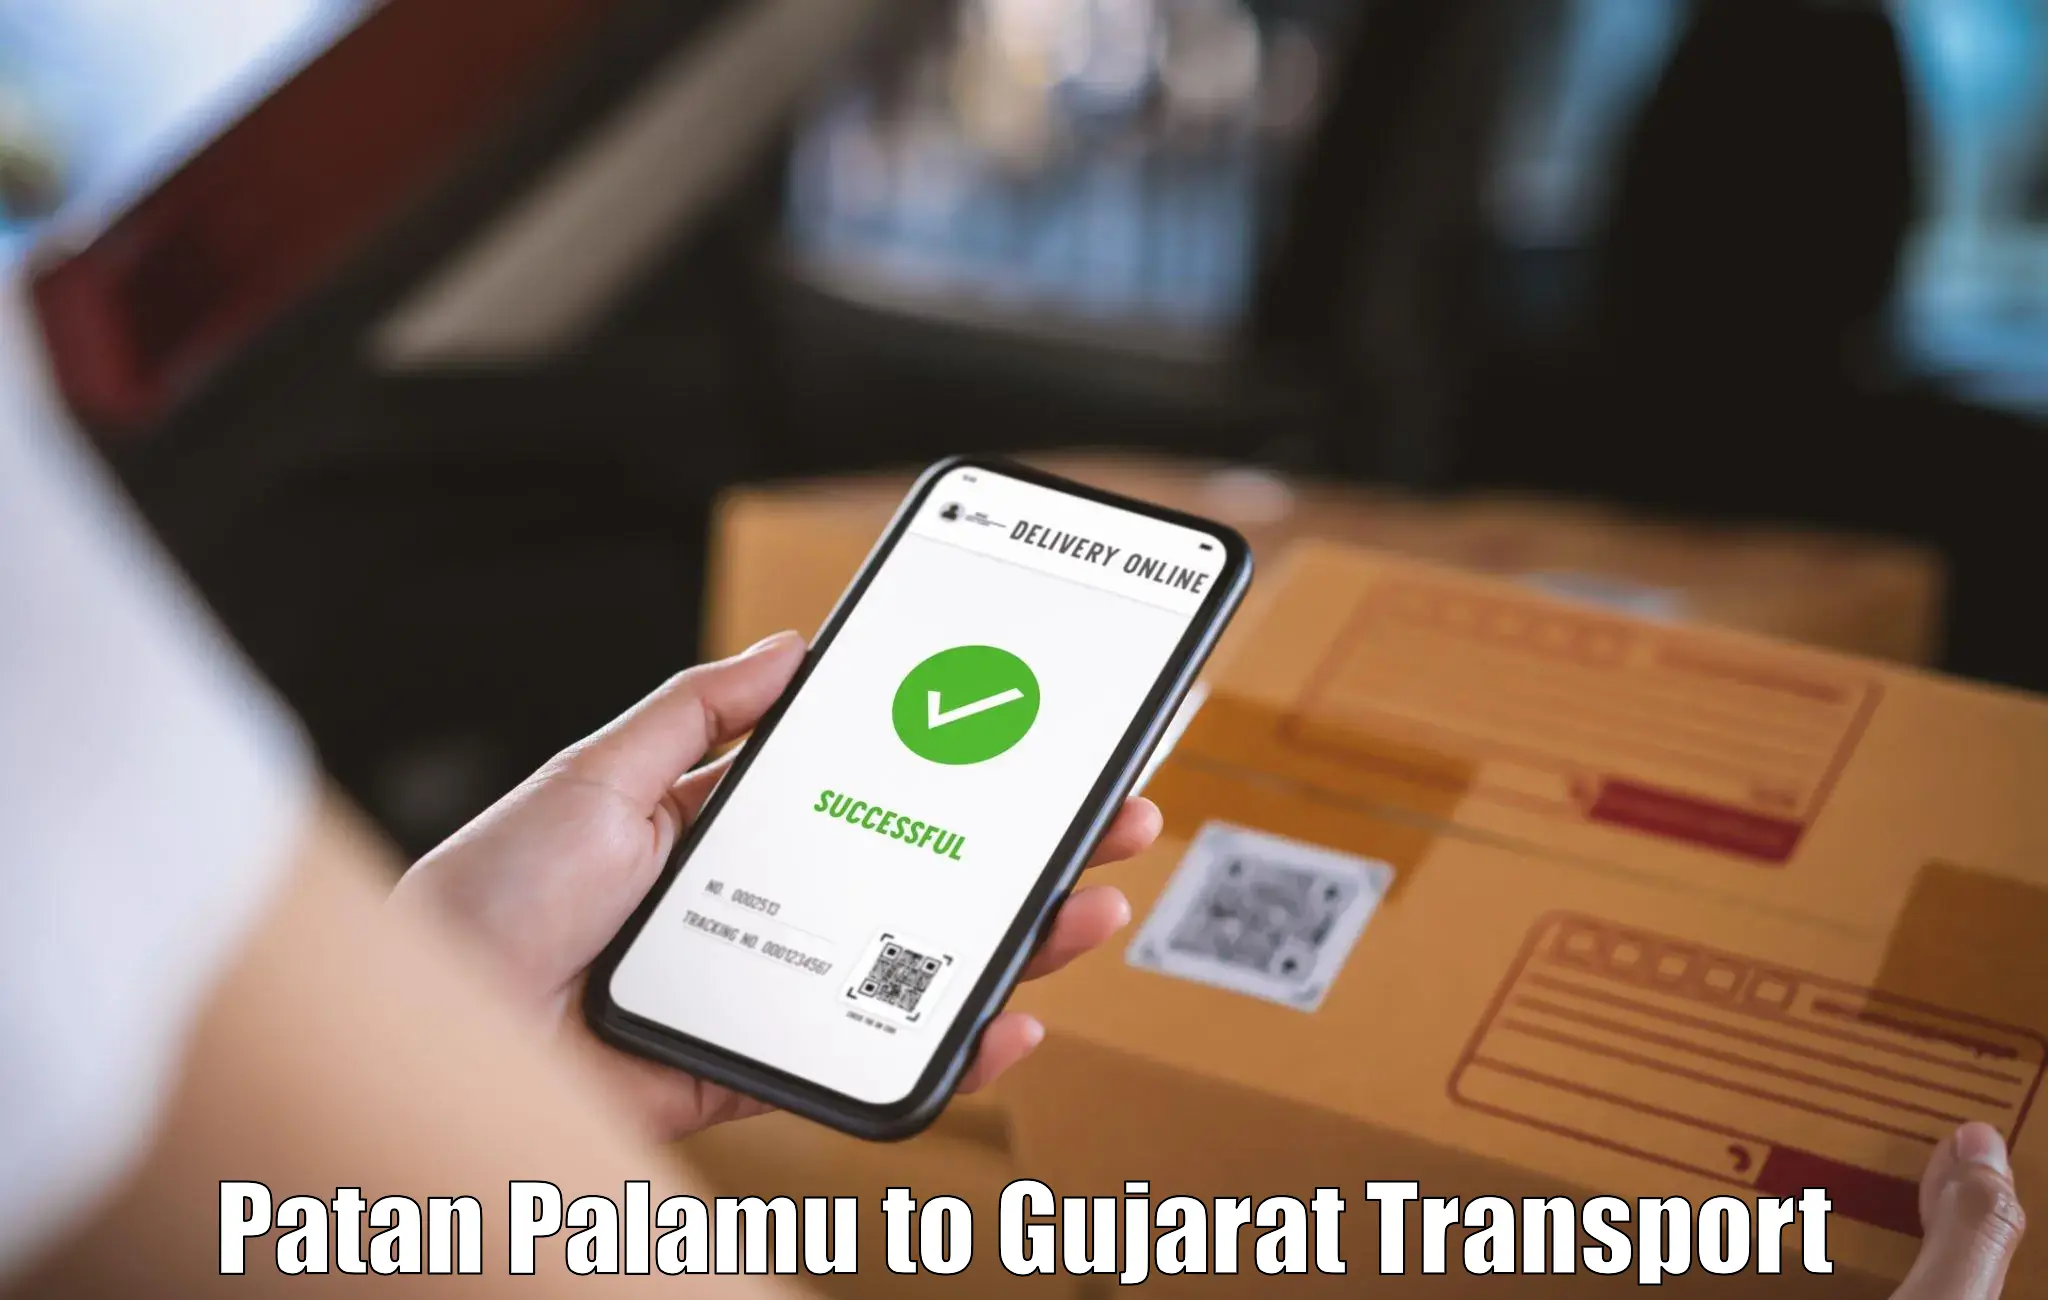 Online transport booking in Patan Palamu to Banaskantha